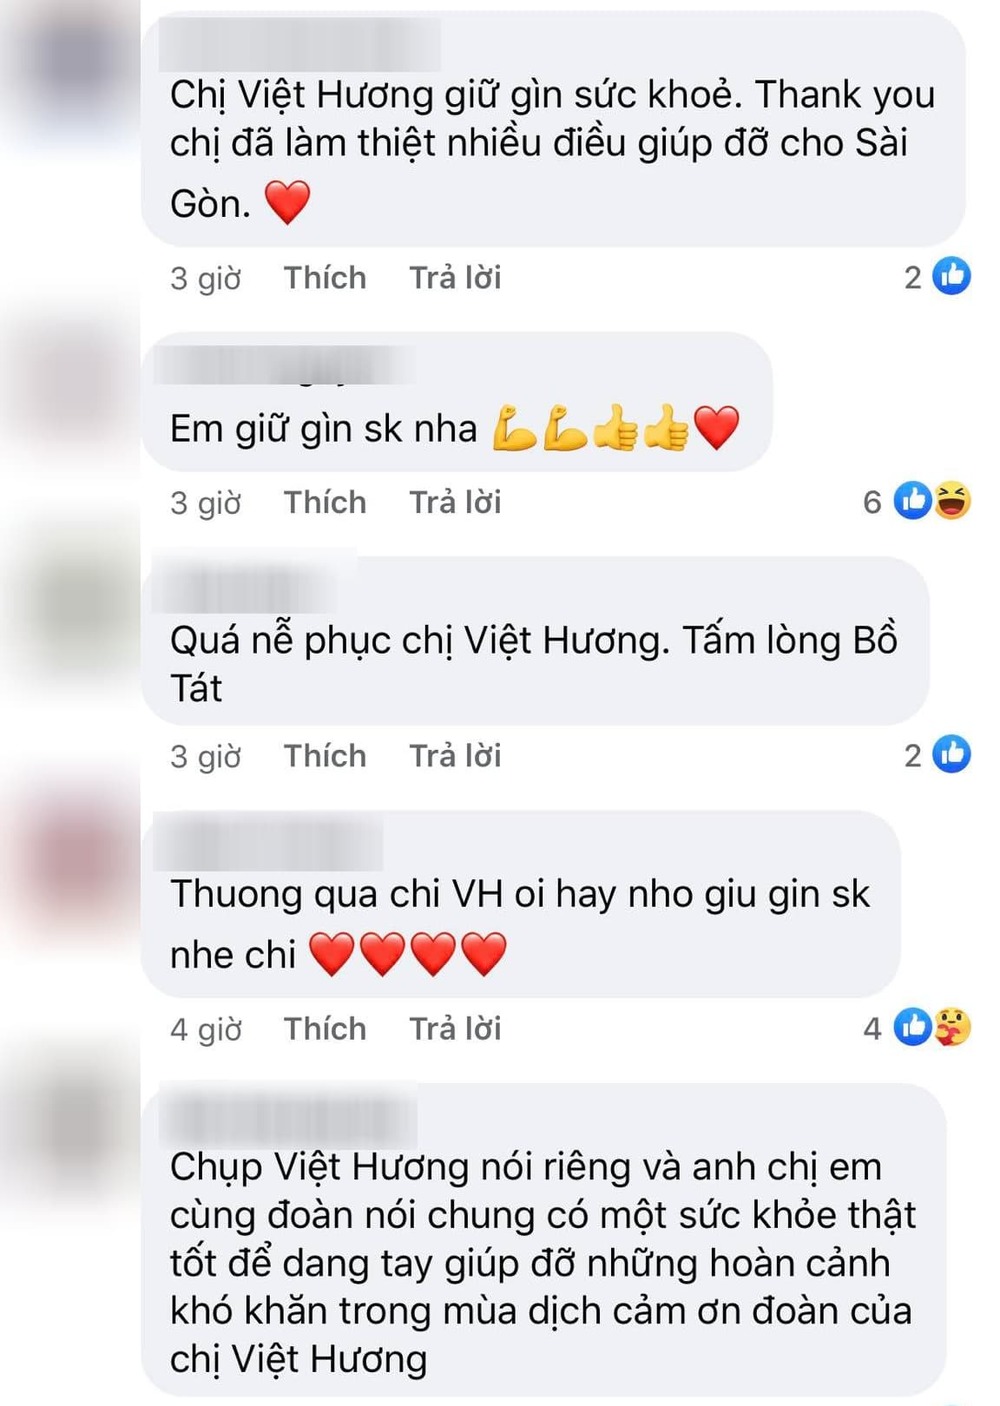  
Khán giả dành sự ngưỡng mộ với việc làm ý nghĩa của Việt Hương. (Ảnh: Chụp màn hình)